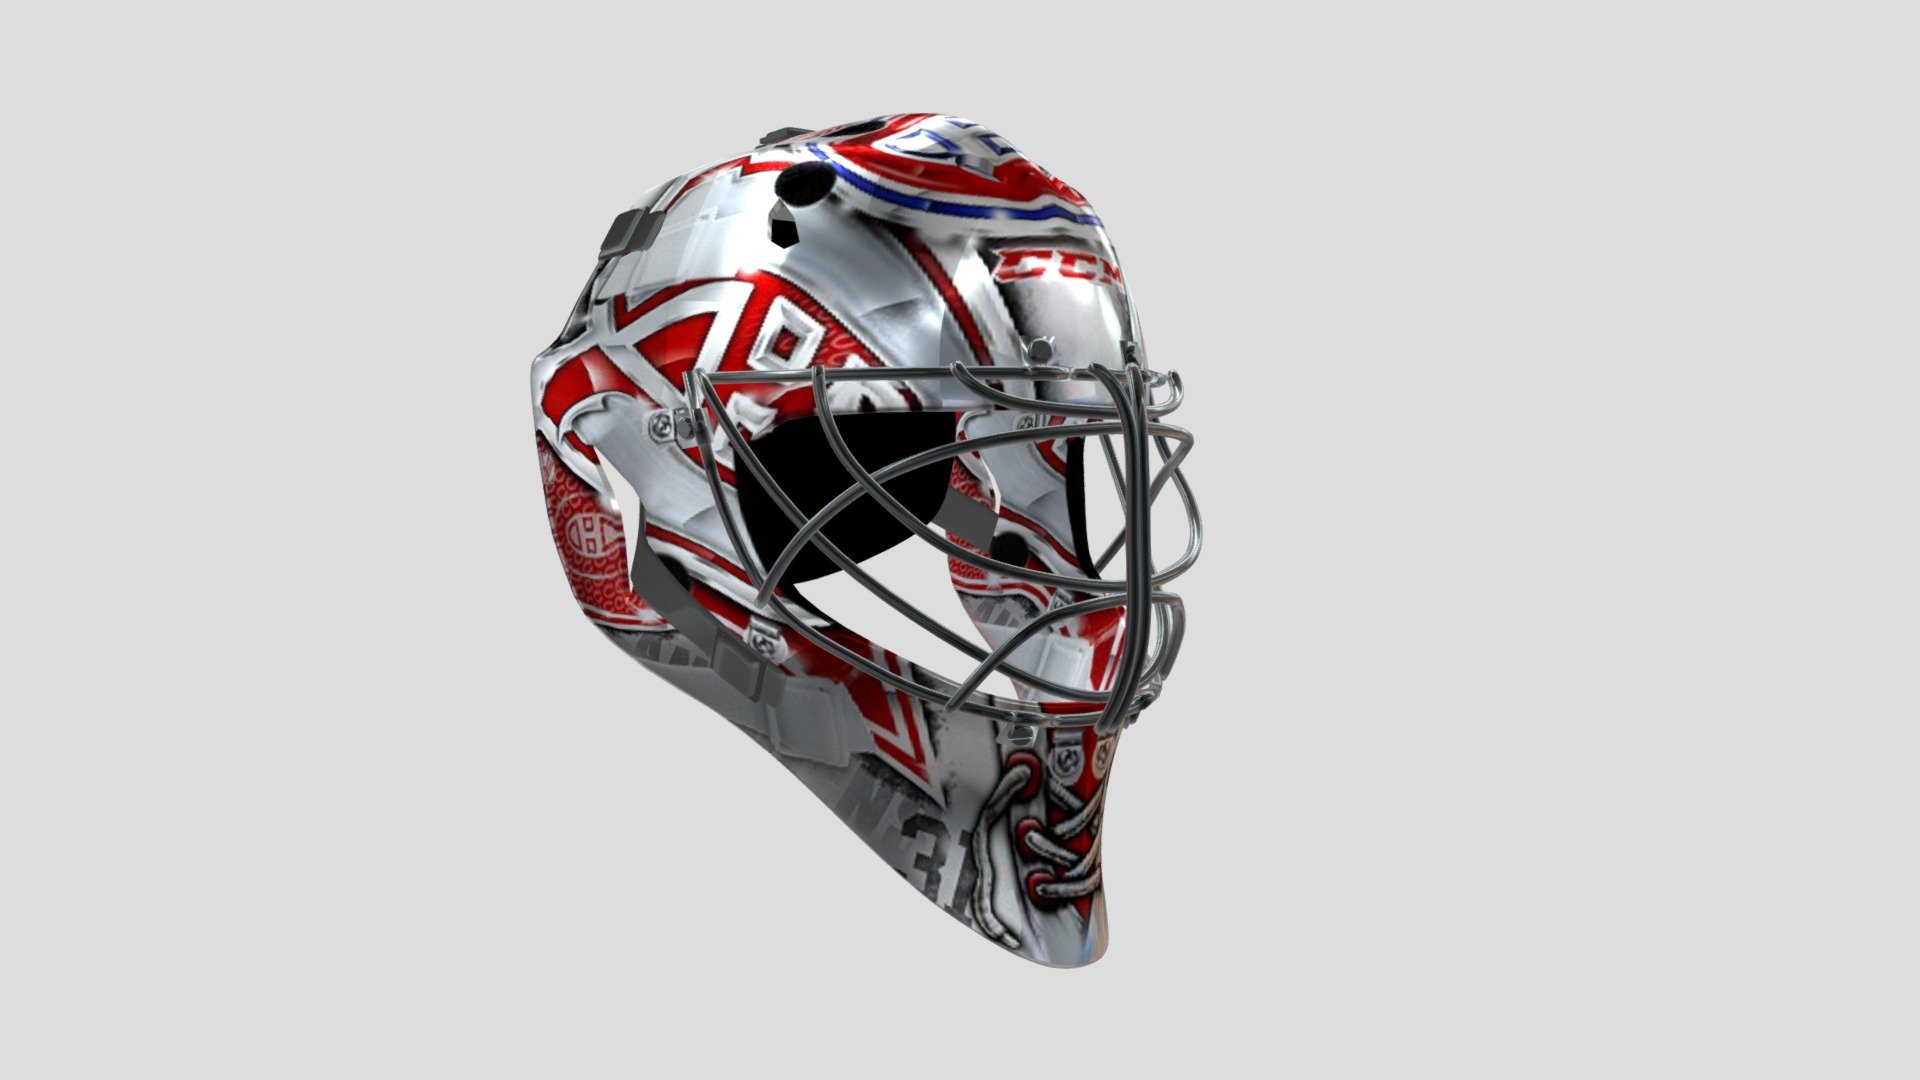 Goalie Mask of rthe new PC hockey game - Goalie Mask - 3D model by Studio NG2 (@StudioNG2) 3d model